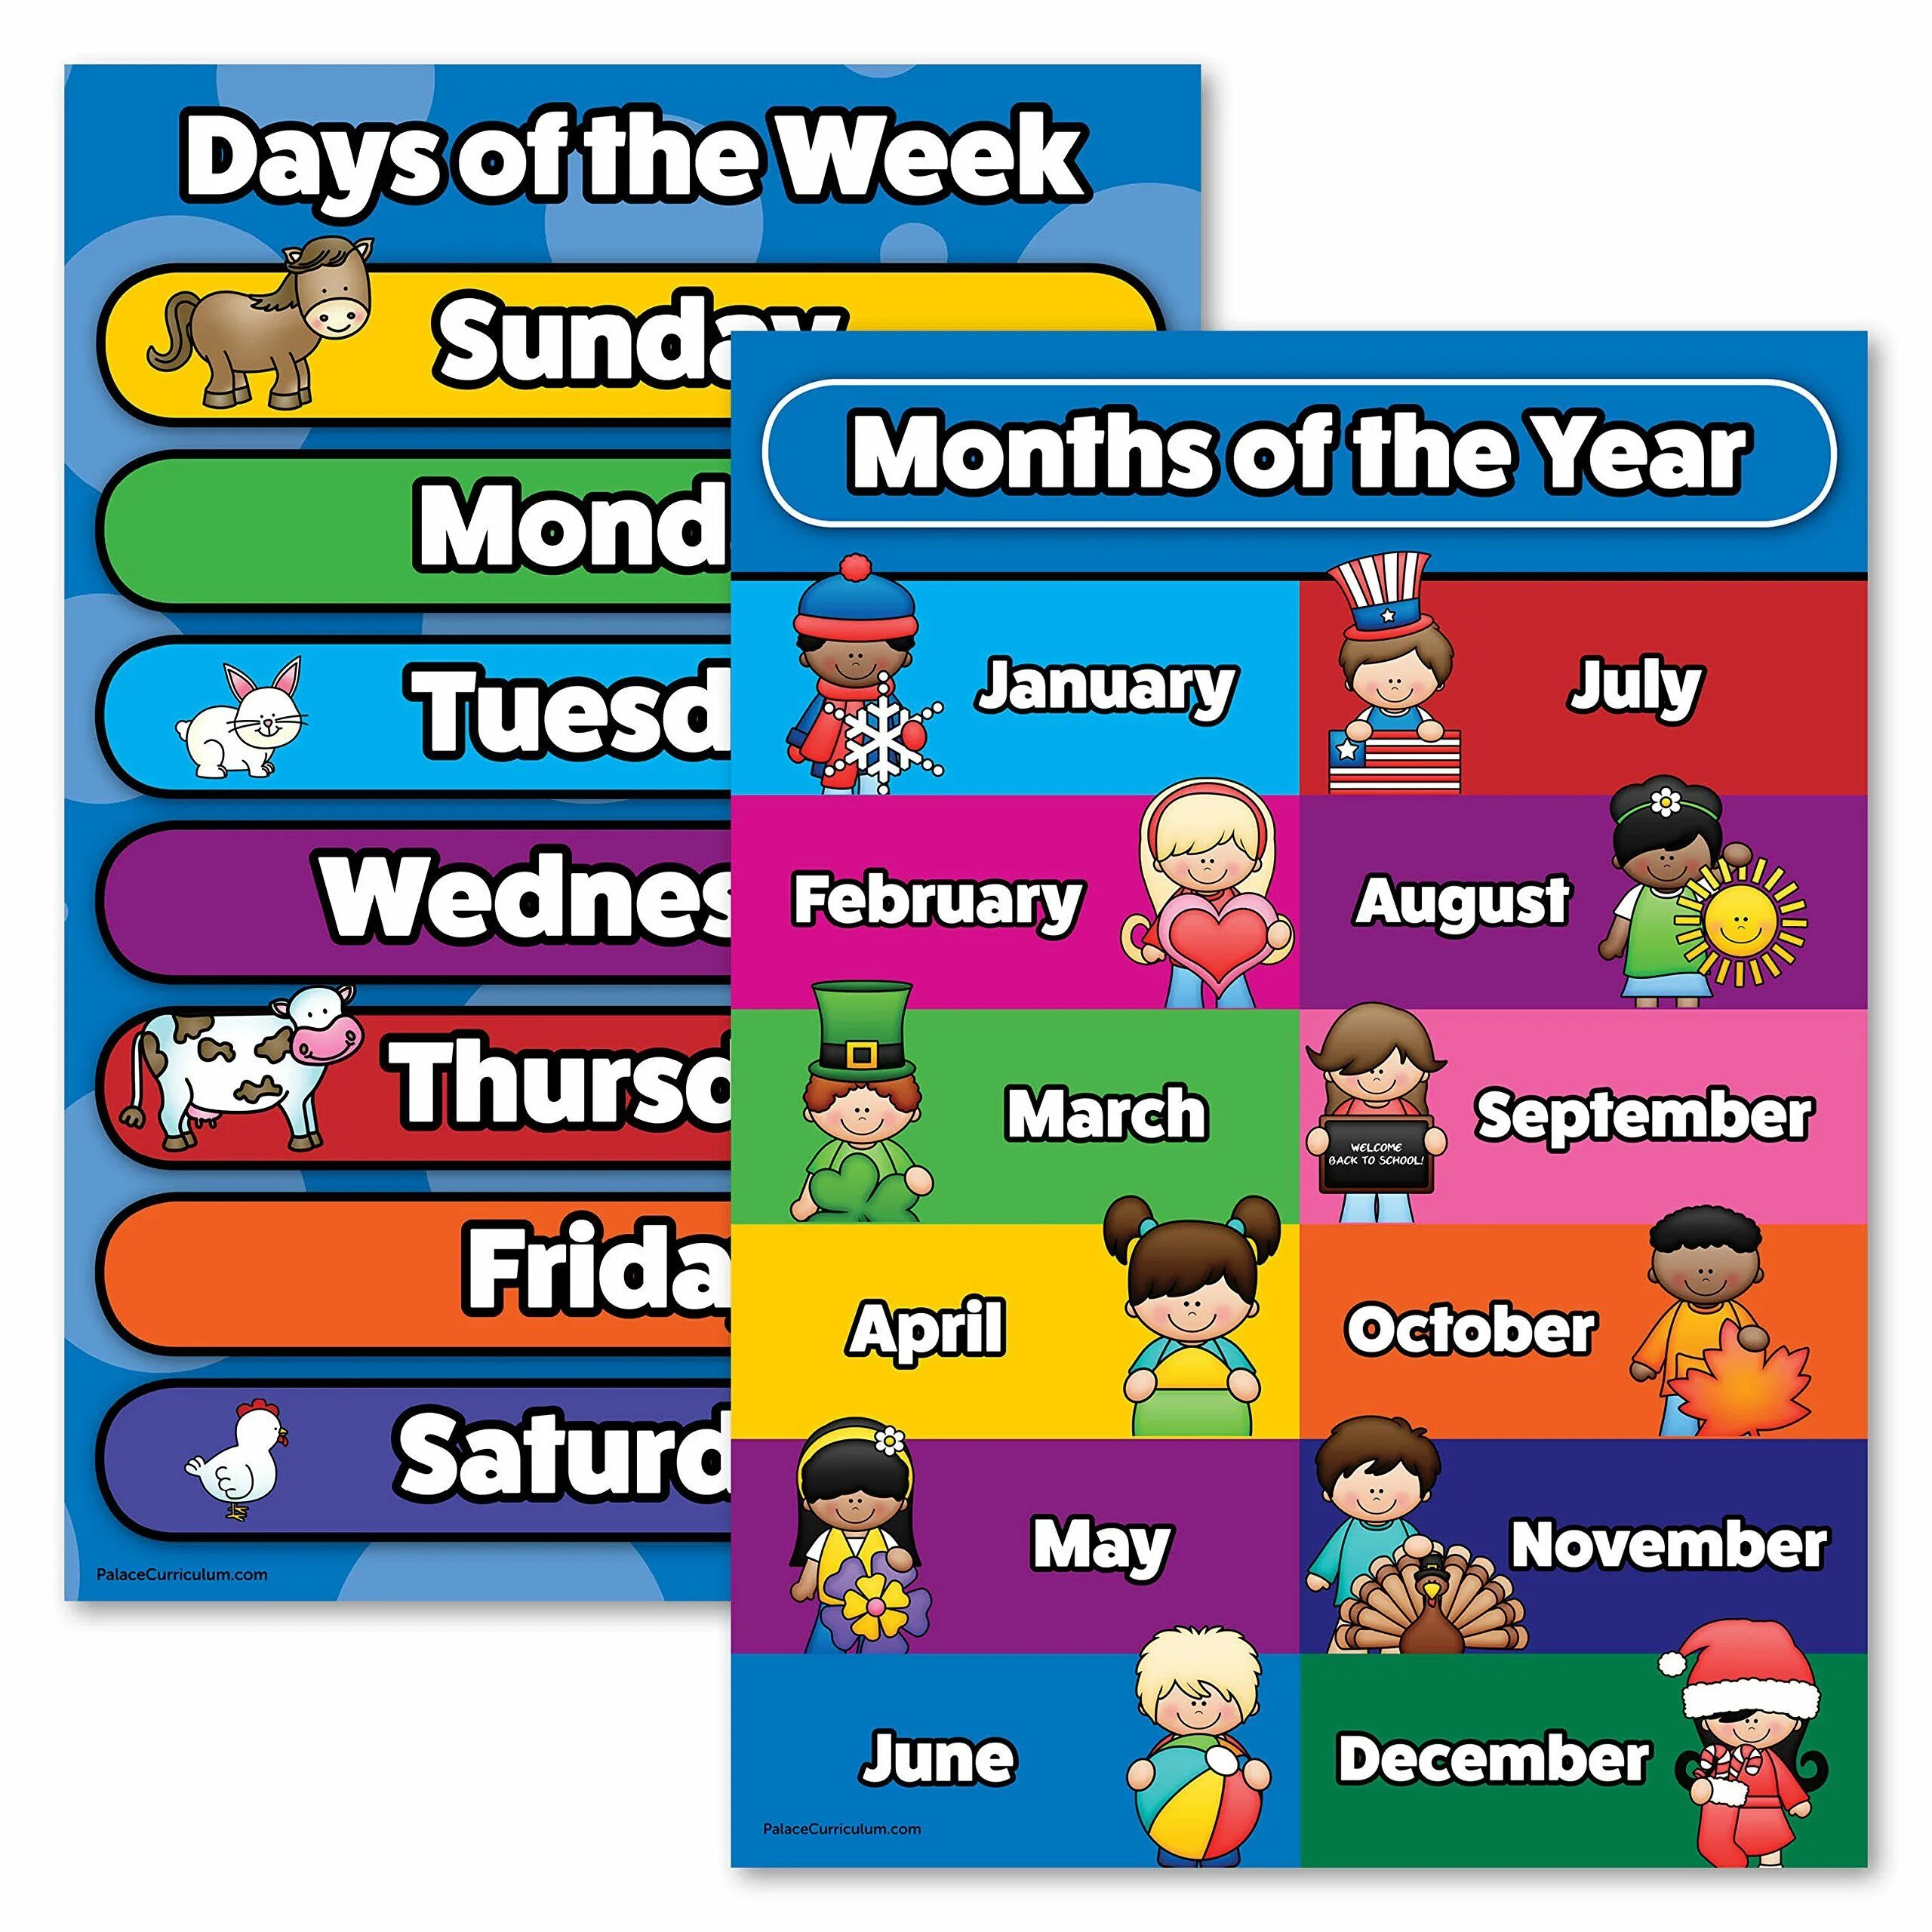 Days of the week months. Ьщтеры вфны ща еру цуул. Days of the week. Days of the week and months. Months of the year плакат.